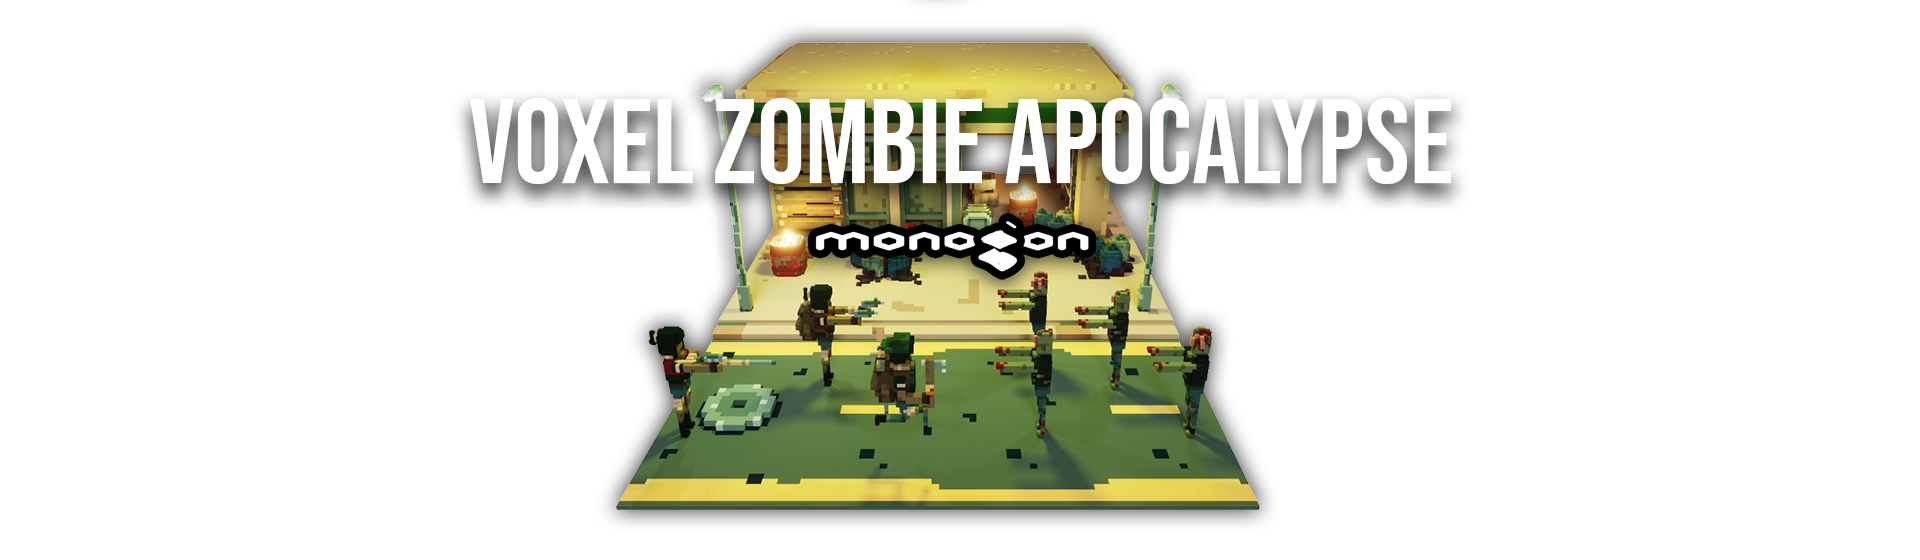 Voxel Zombie Apocalypse - monogon